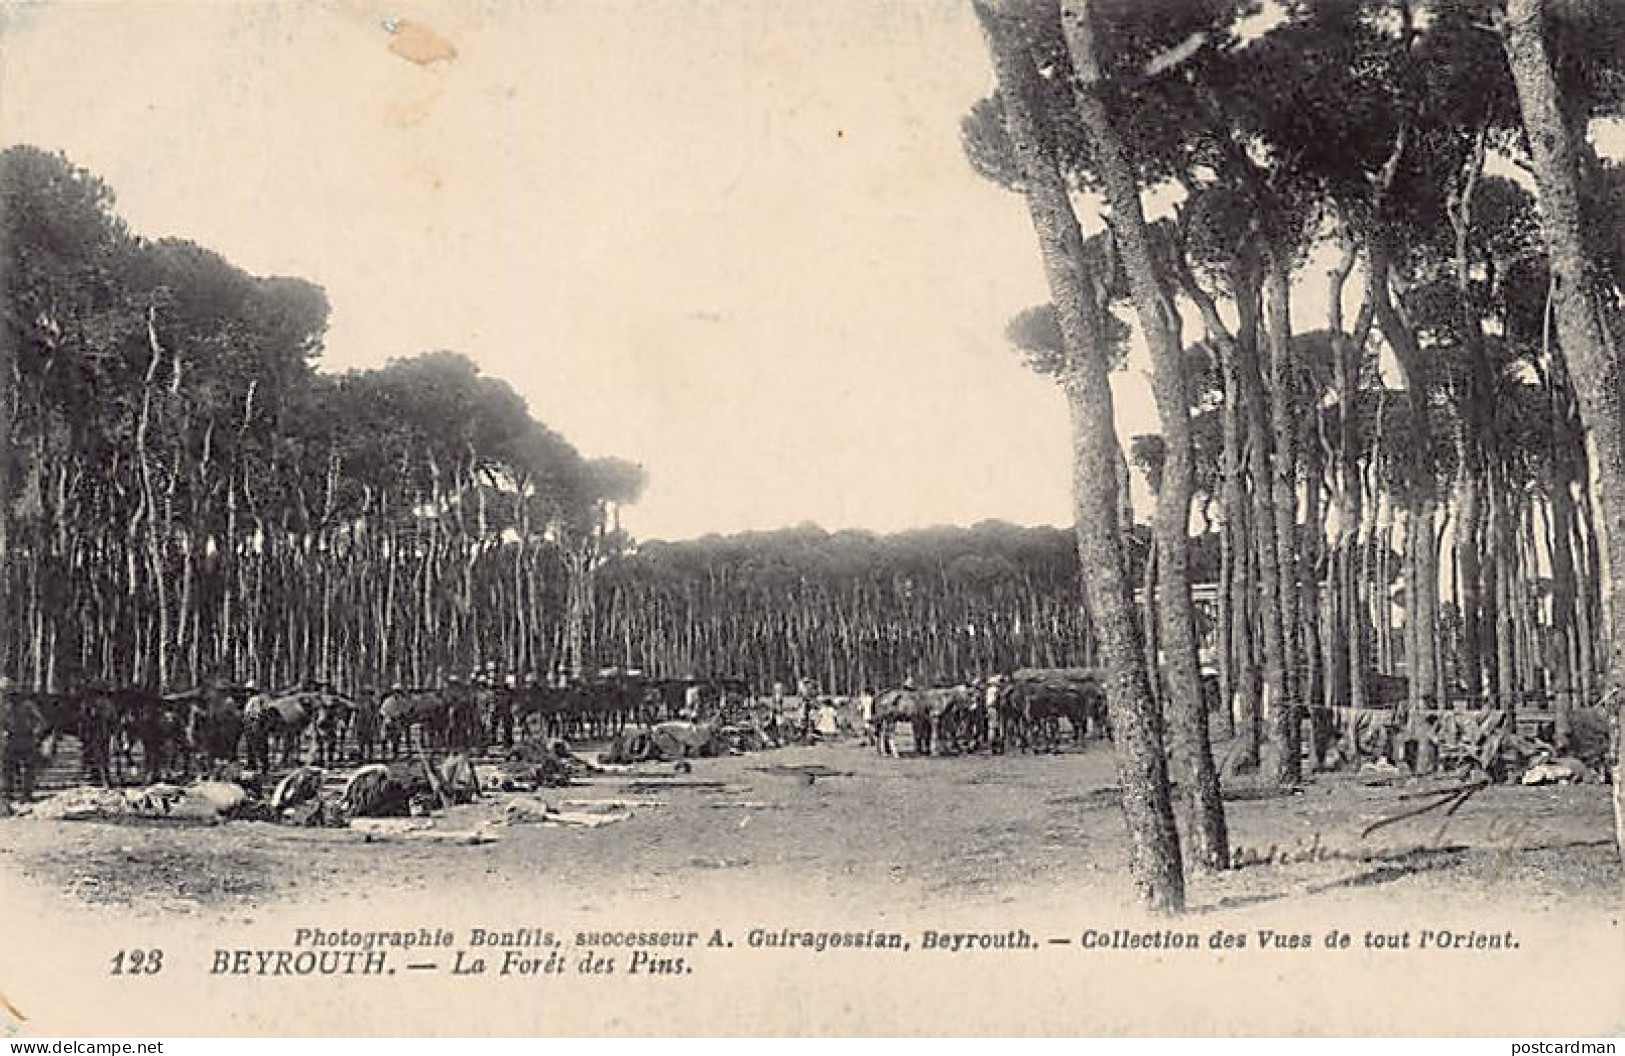 Liban - BEYROUTH - La Forêt De Spins - Camp Militaire - Ed. Photographie Bonfils, Successeur A. Guiragossian 123 - Libanon